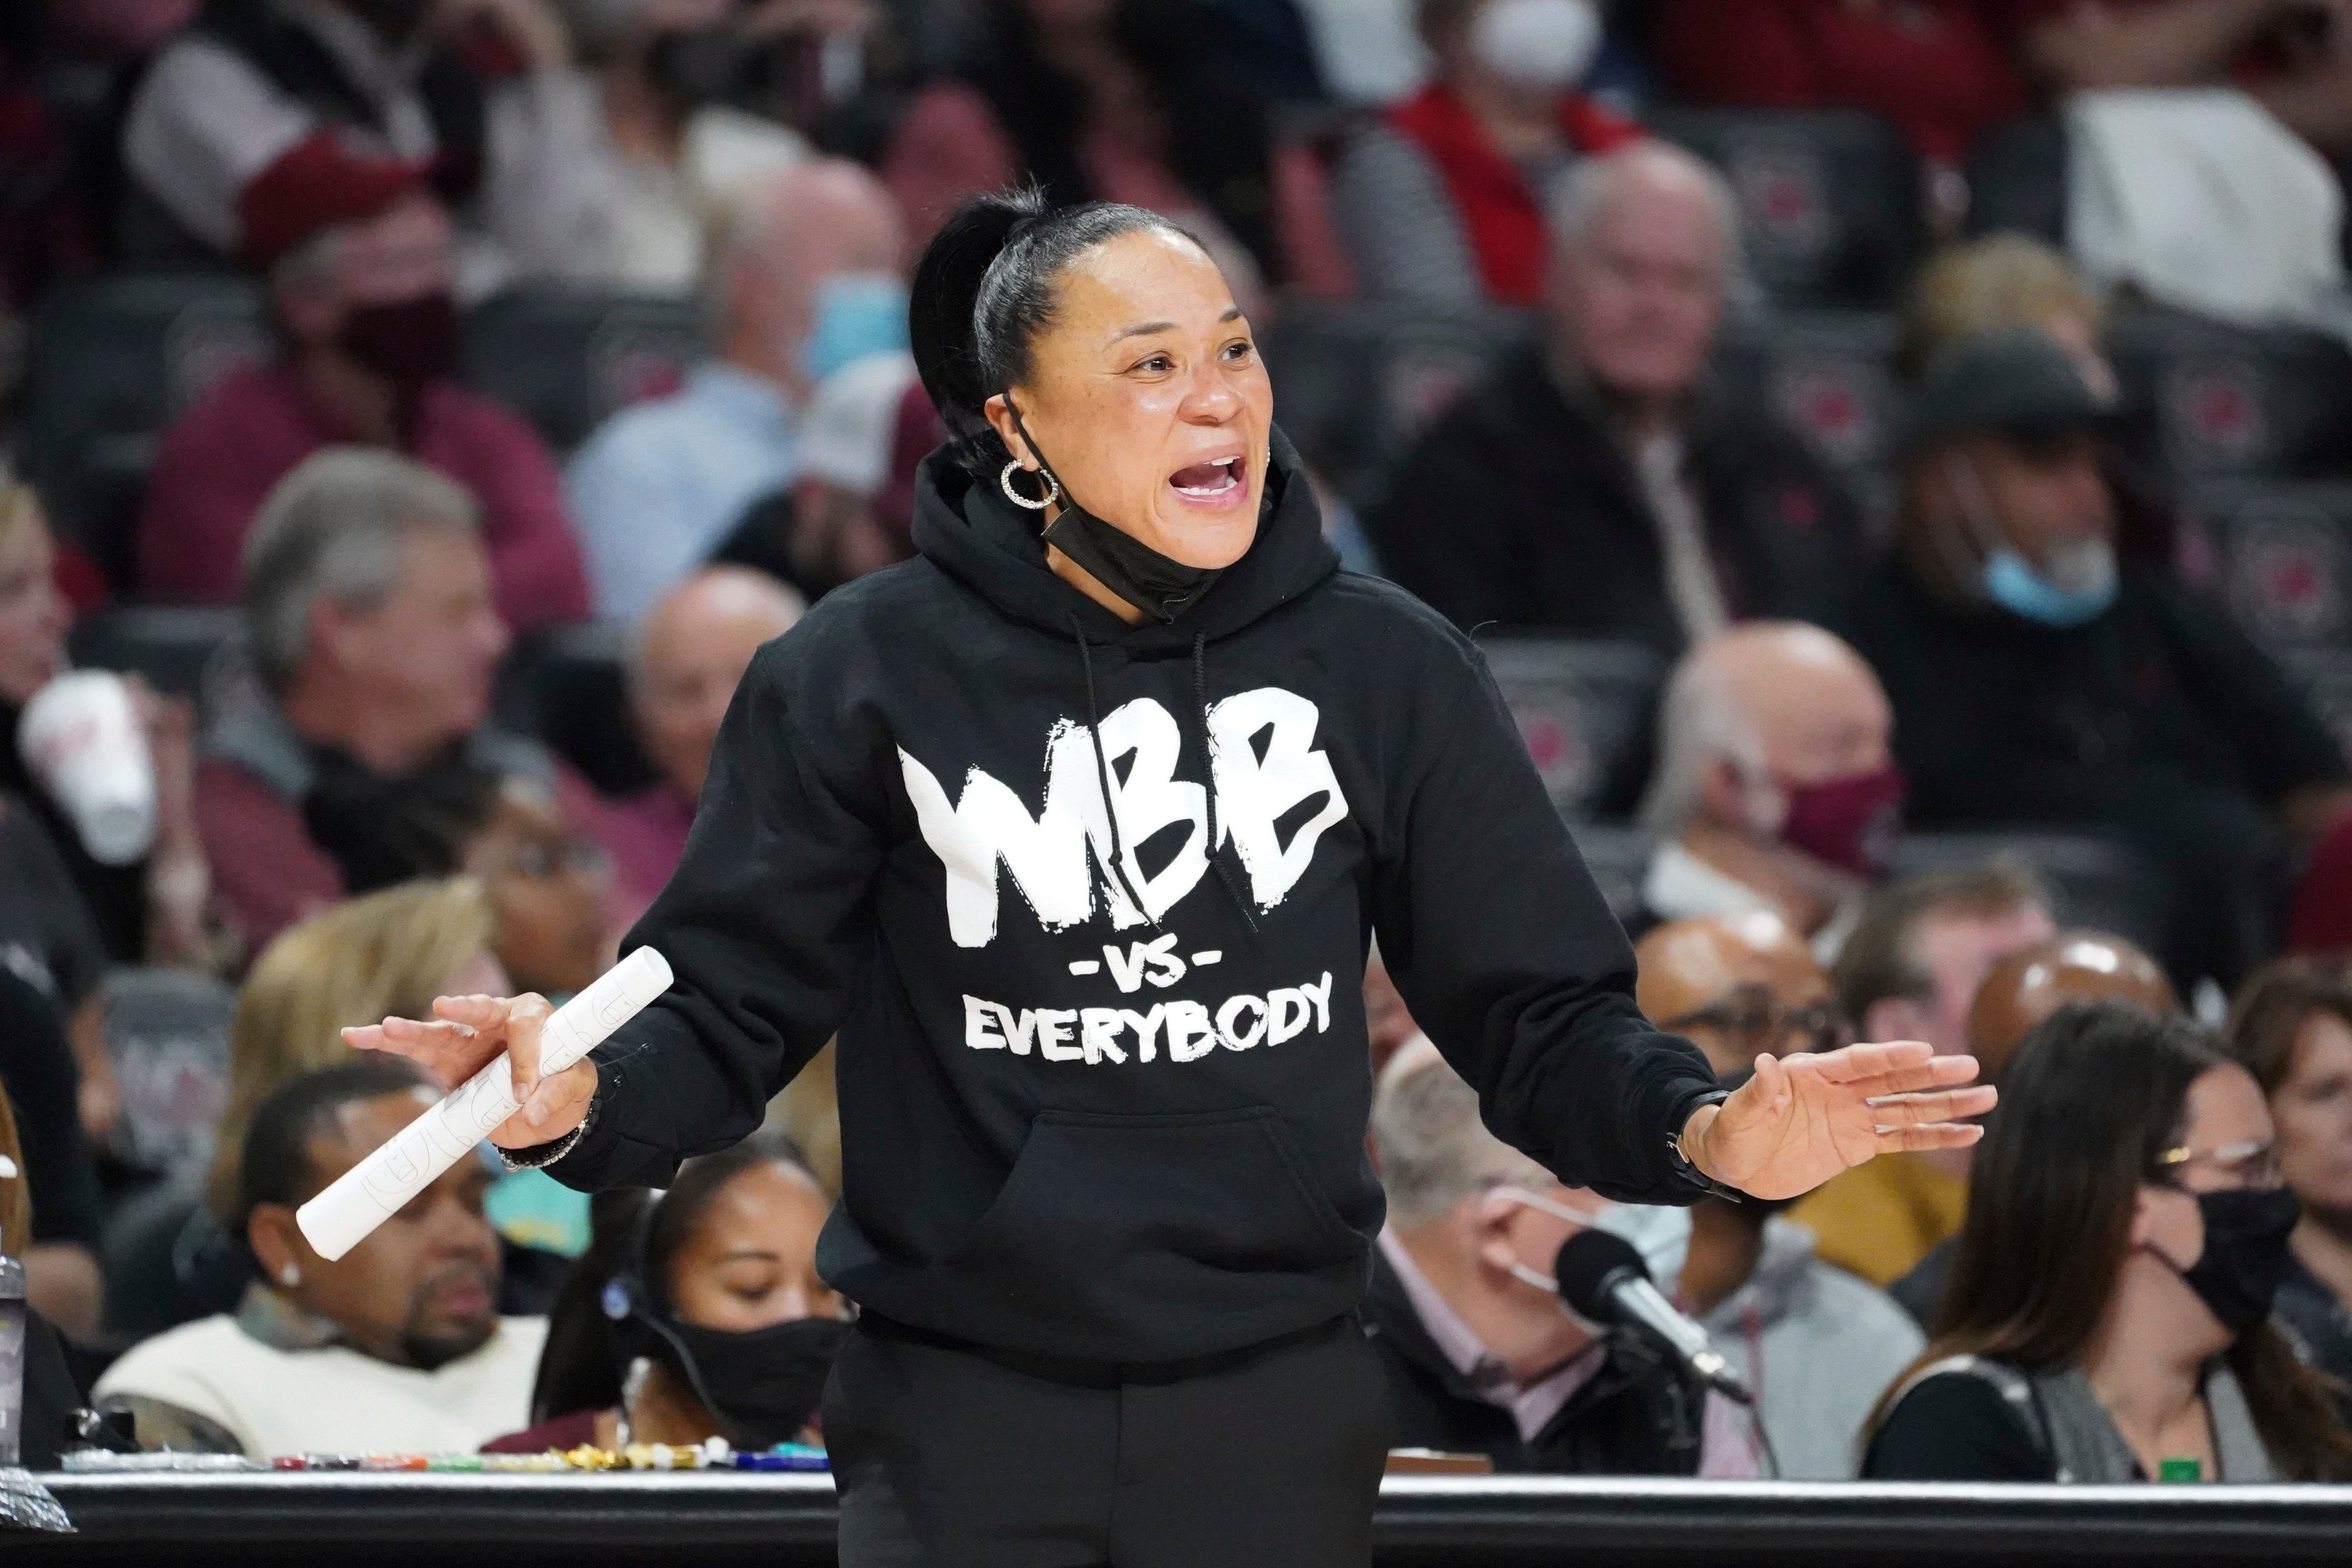 South Carolina Basketball coach Dawn Staley had a big night in Philly